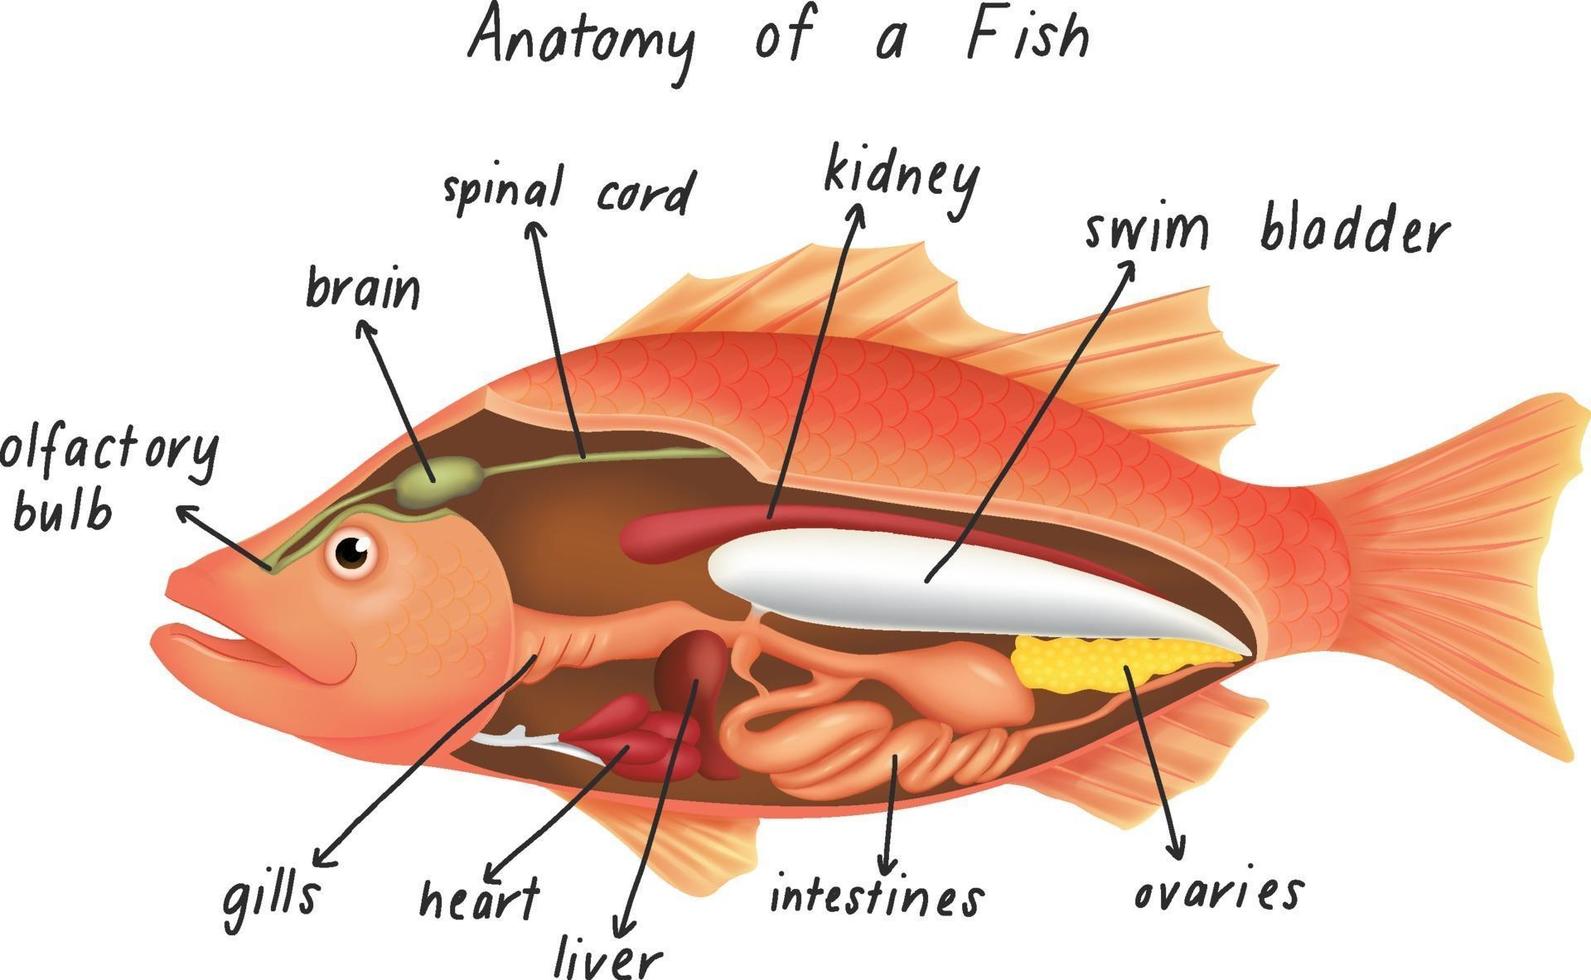 anatomia de um peixe vetor